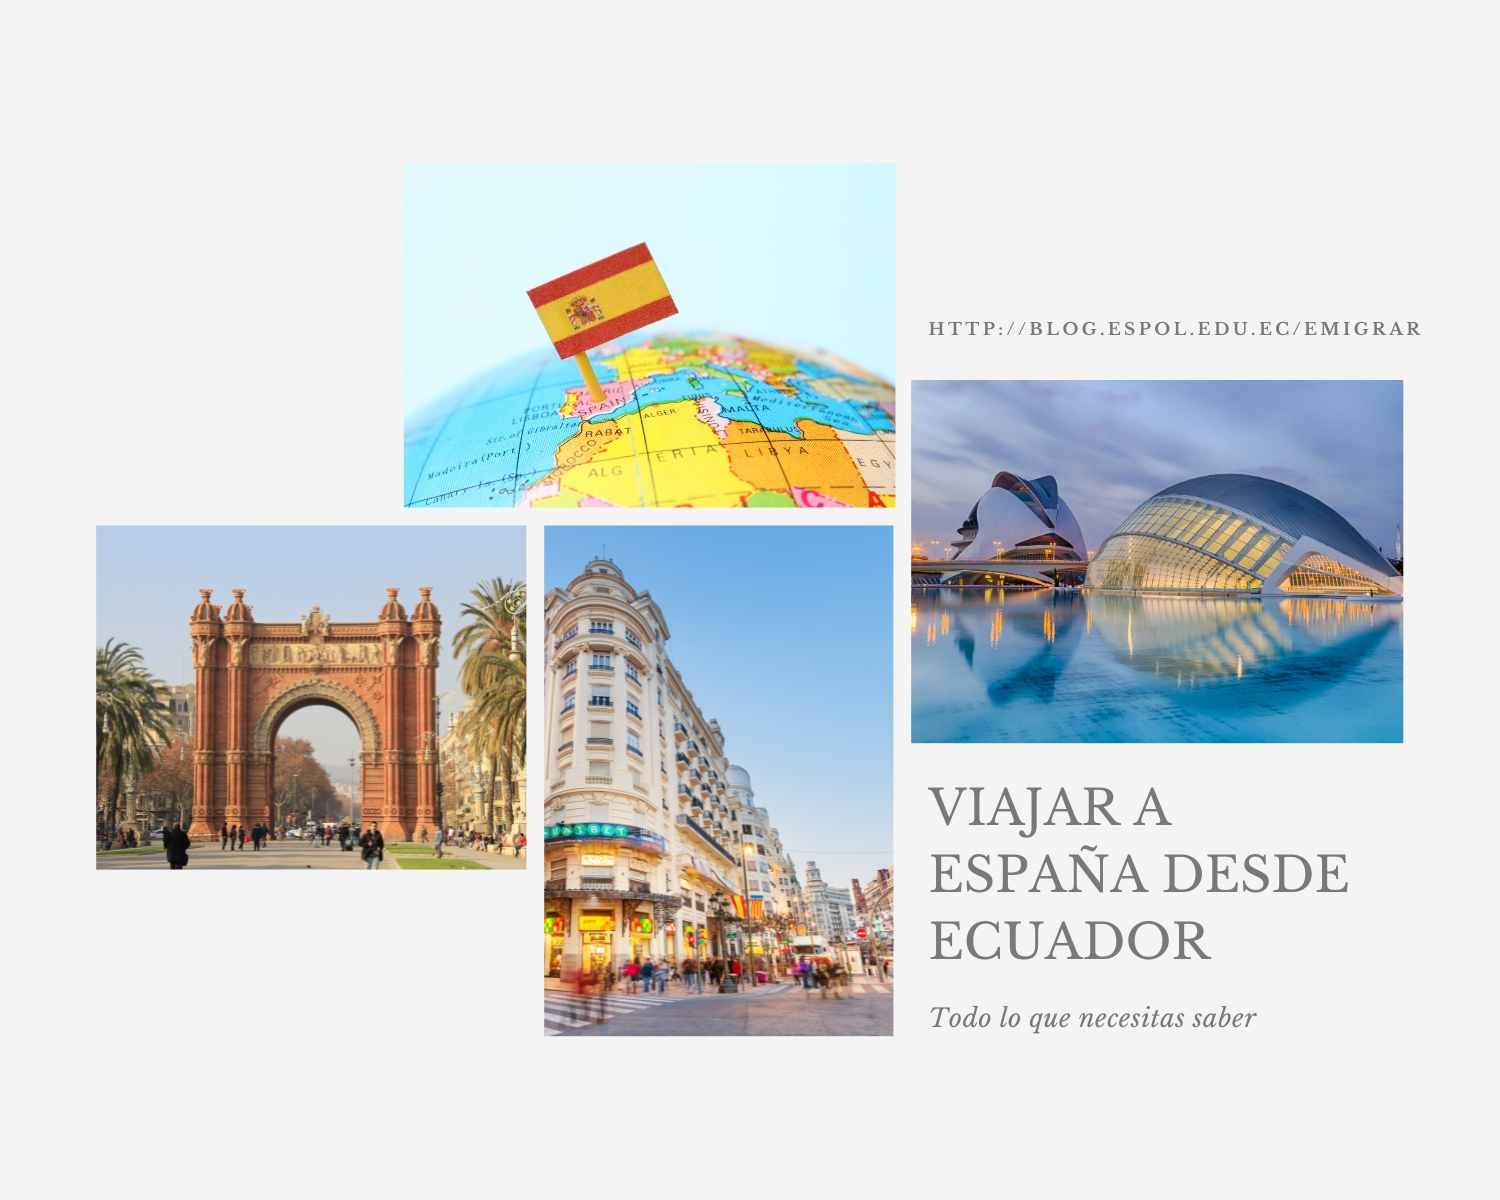 Viajar a España desde Ecuador